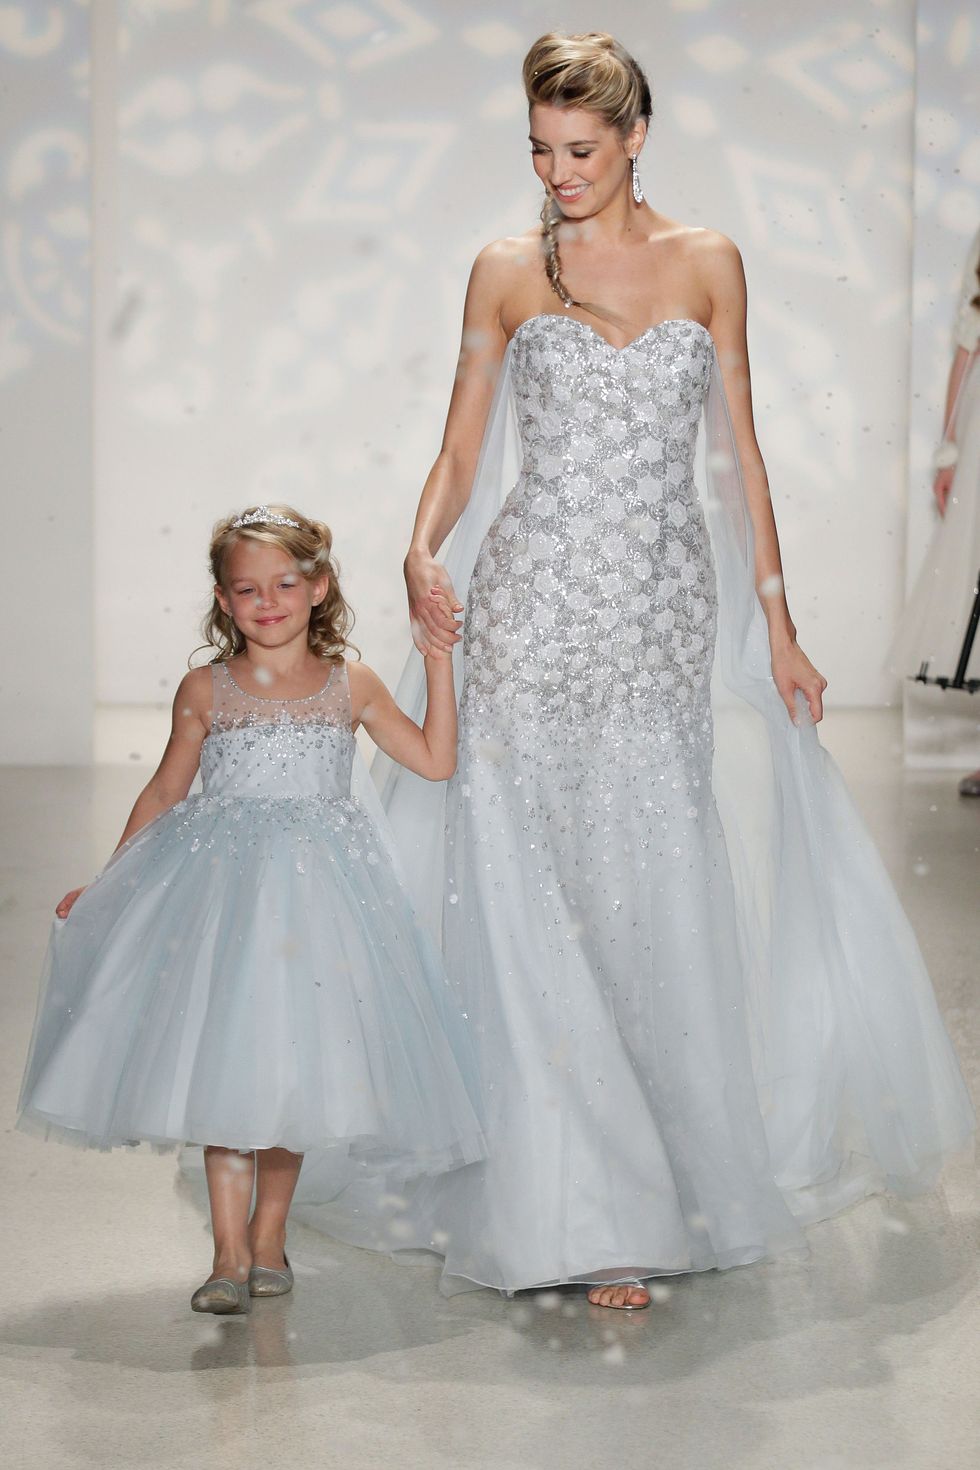 Frozen themed wedding dress and flower girl dress